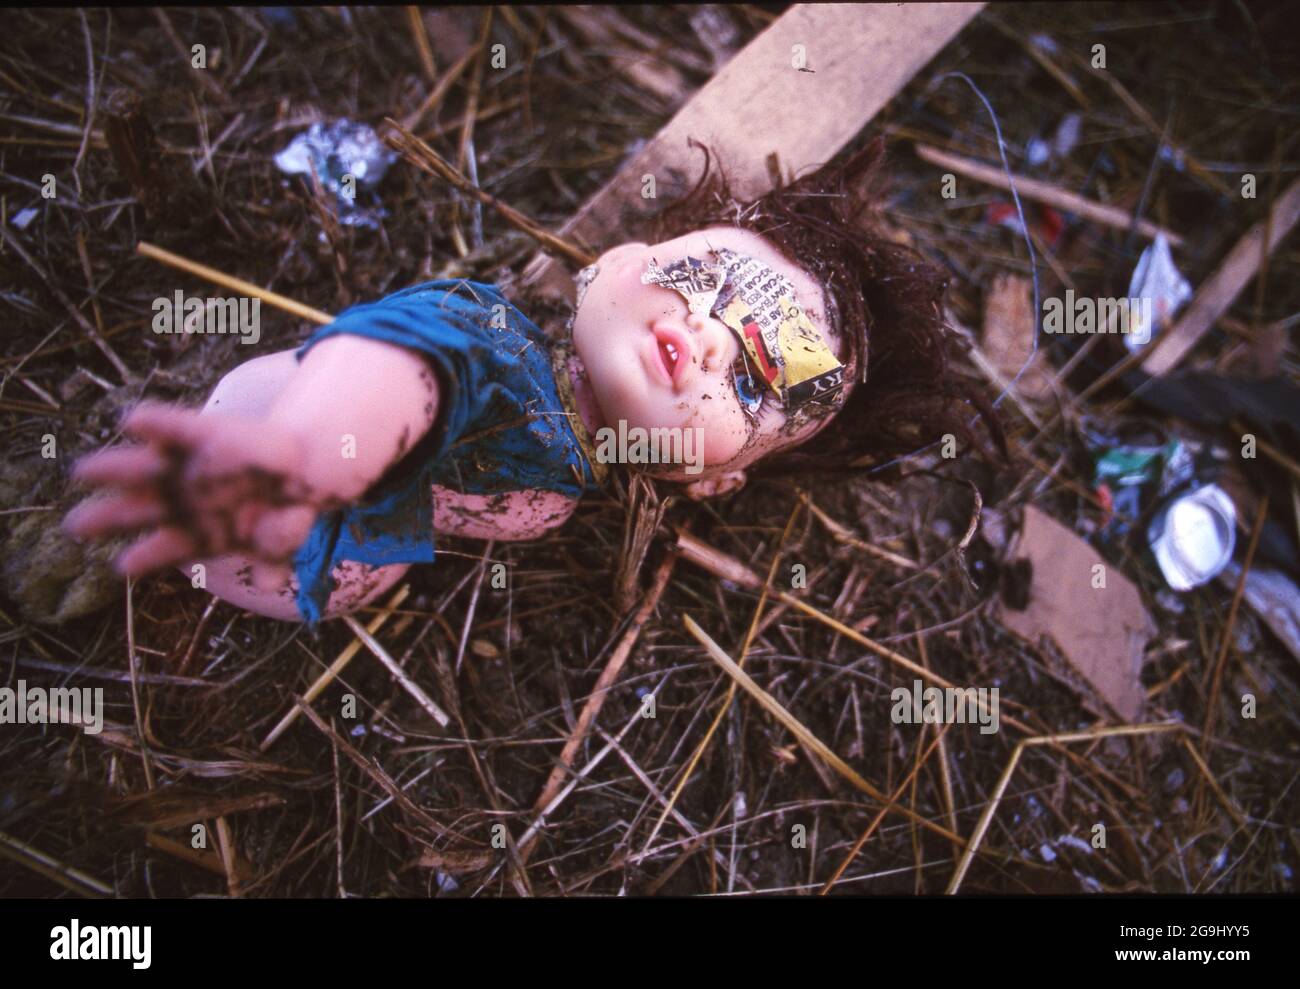 Jarrell Texas USA, 28 maggio 1997: Parte della bambola di un bambino giace tra le macerie lasciate dopo un tornado di categoria 5 che ha colpito la città centrale del Texas di Jarrell il 27 maggio 1997, uccidendo 27 persone e distruggendo decine di case. ©Bob Daemmrich Foto Stock